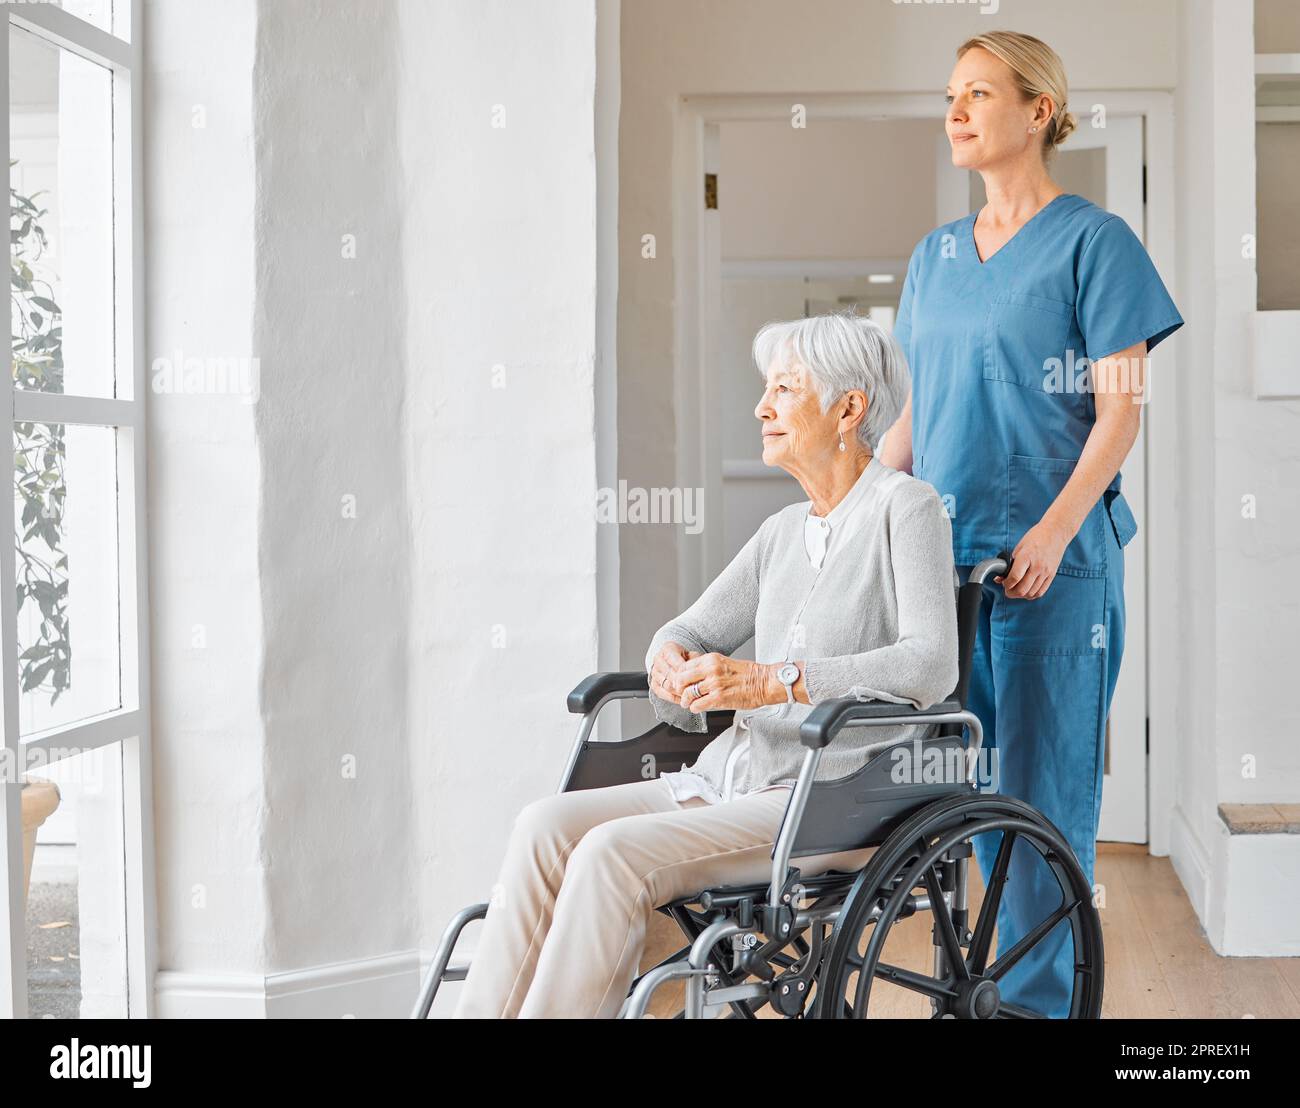 Le cose cambieranno per il meglio, lo so appena. un'infermiera che si occupa di una donna anziana su una sedia a rotelle in una casa di riposo Foto Stock